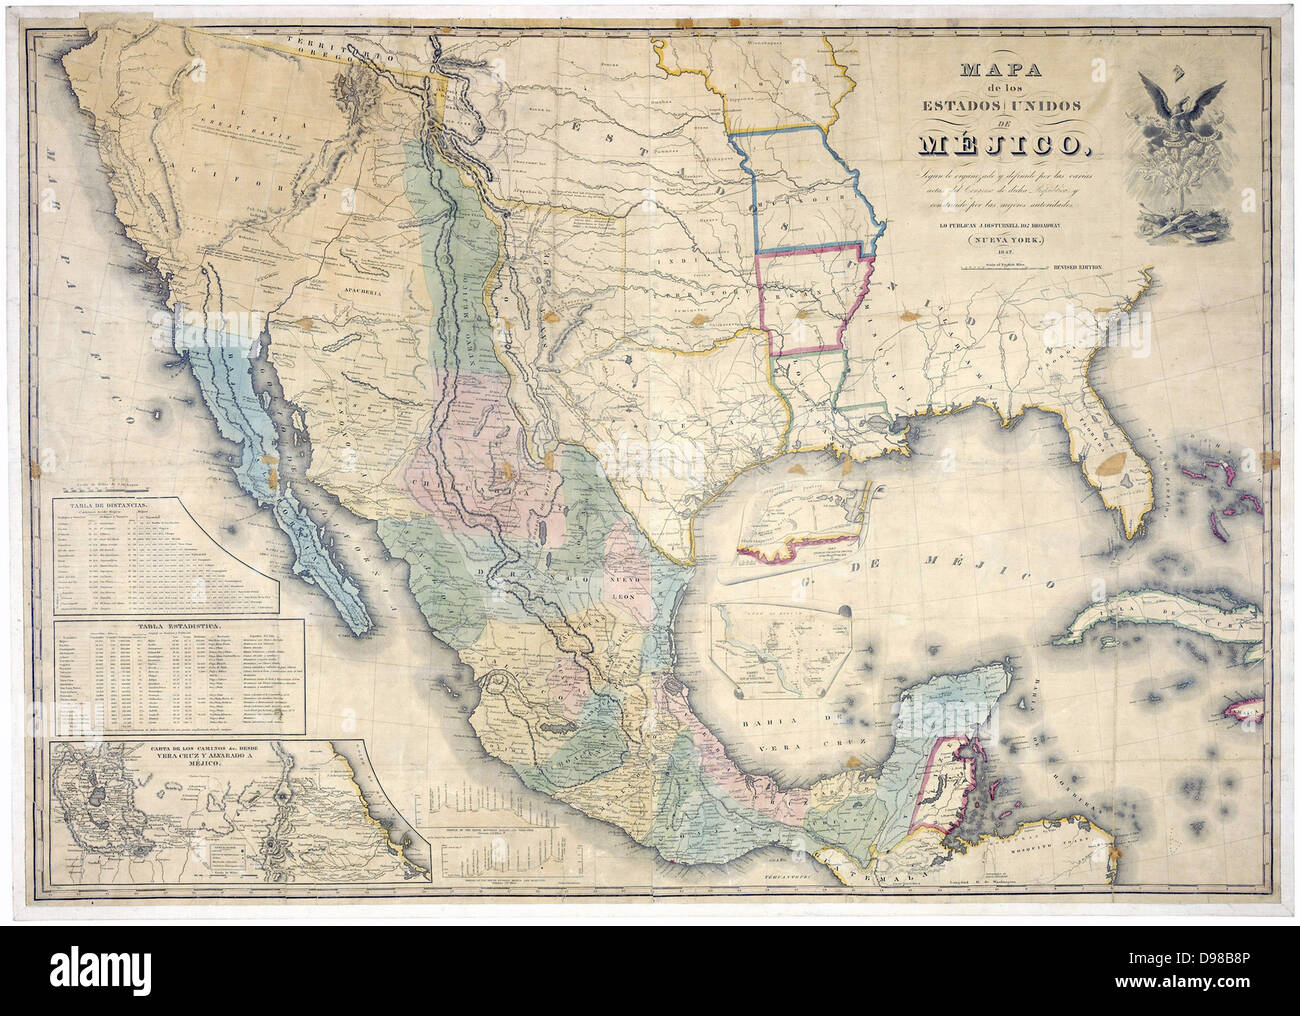 Karte der Vereinigten Staaten von Mexiko, 1847 veröffentlicht von J Disturnall. Dies wurde der Vertrag von Guadalupe-Hidalgo dem die Mexikanische amerikanischen Krieg (1846-1848) Beendet angehängt, und zeigt die obere Kalifornien und New Mexico als Mexikanische, obwohl sie in dem Vertrag abgetreten worden war. Es gibt auch die Grenzen und mexikanischen Schreibweisen. Stockfoto